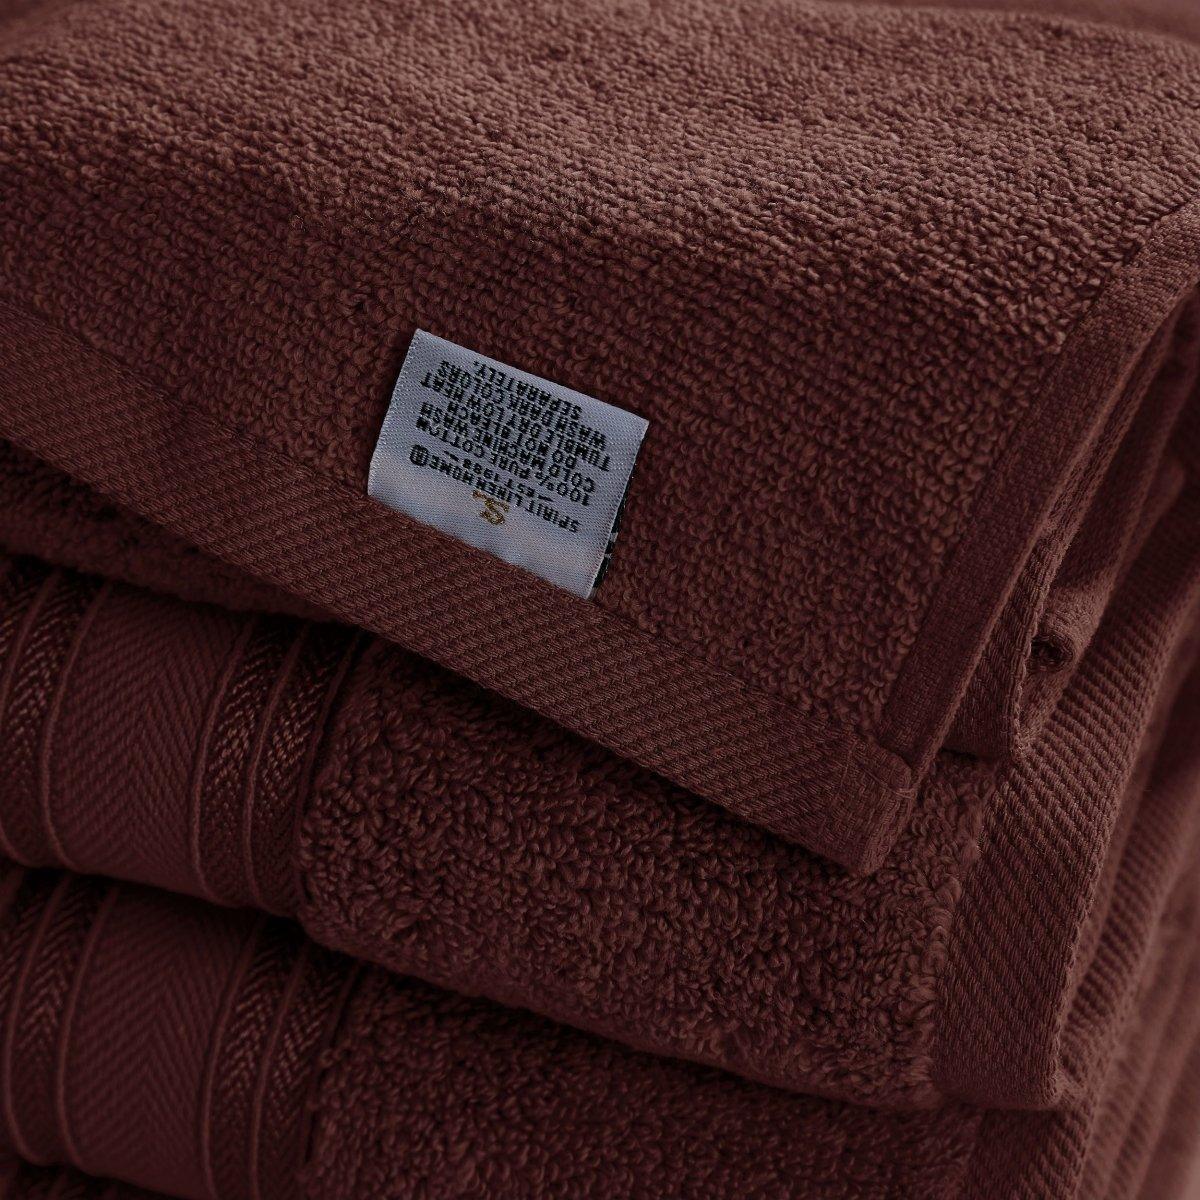 https://spiritlinen.com/cdn/shop/products/deep-mahogany-4-piece-soft-cotton-bath-towels-set-651698.jpg?v=1683418972&width=1445